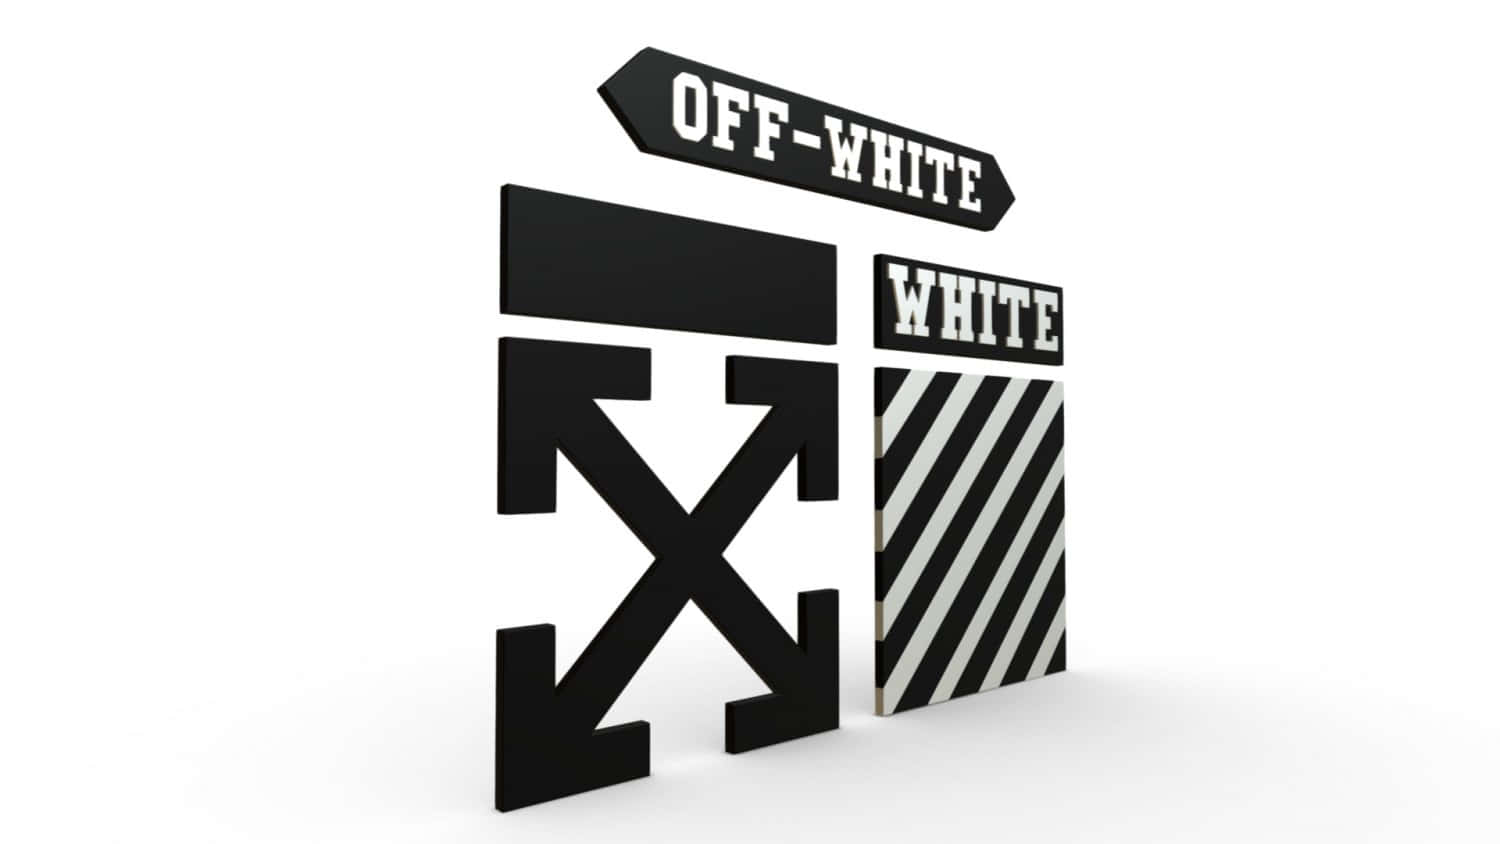 Hintergrundmit Off-white Logo